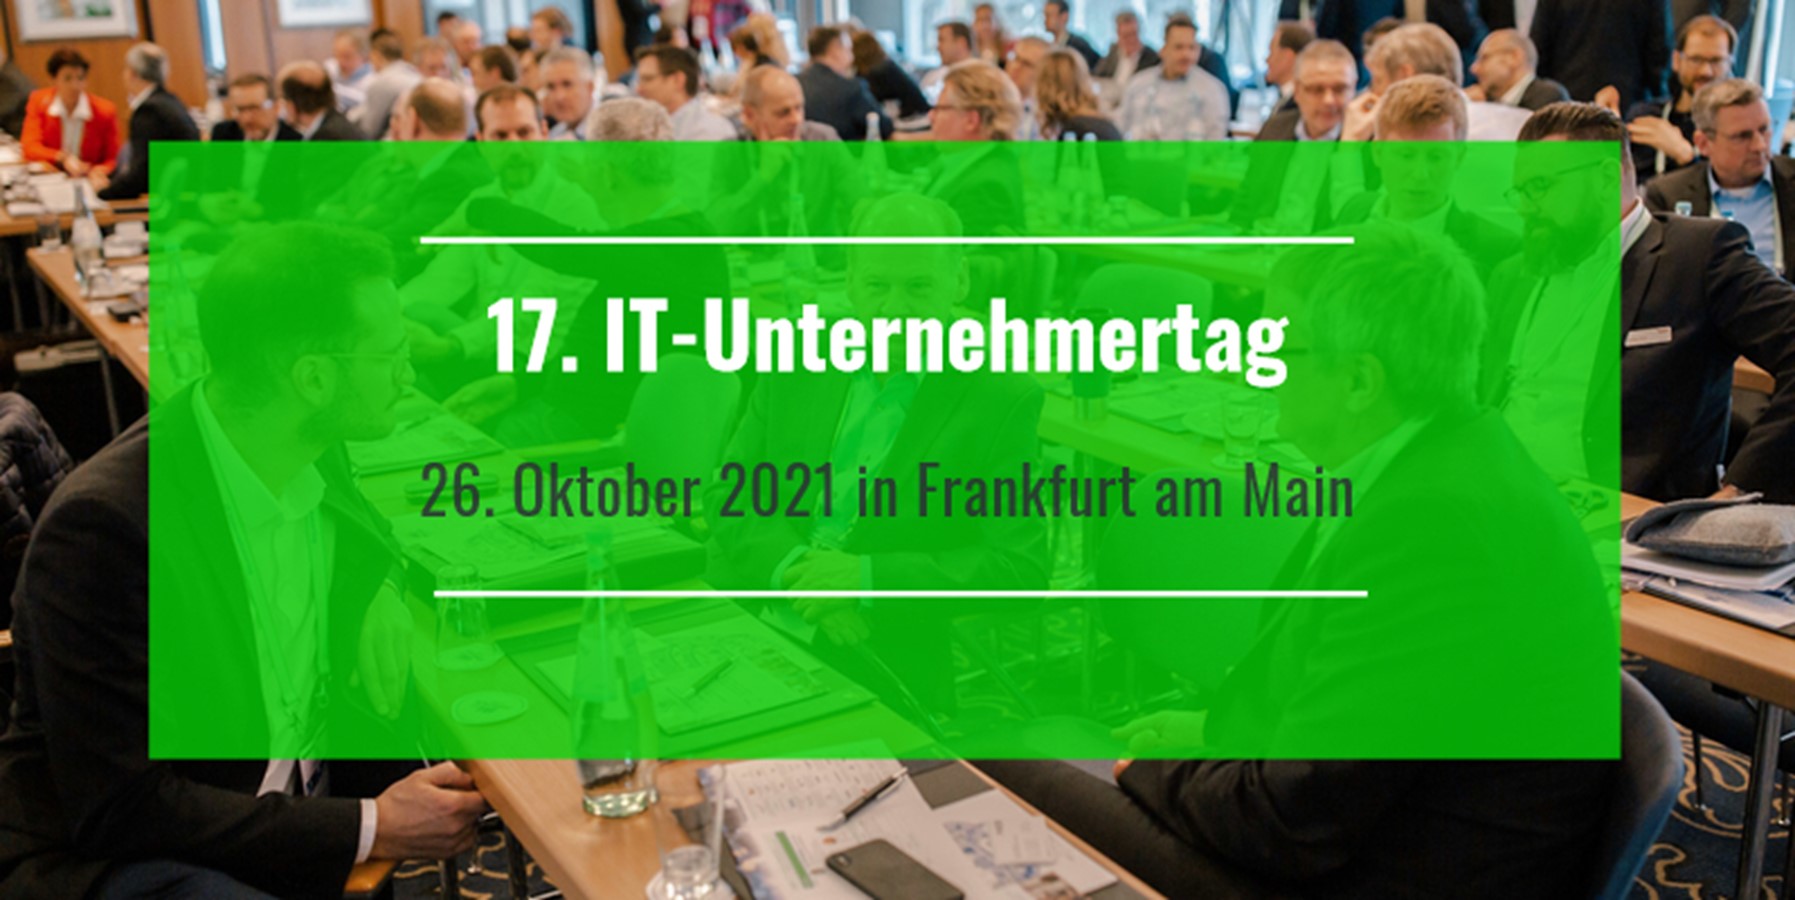 17. IT-Unternehmertag in Frankfurt: “Transparenz im M&A Markt der mittelständischen IT-Branche“